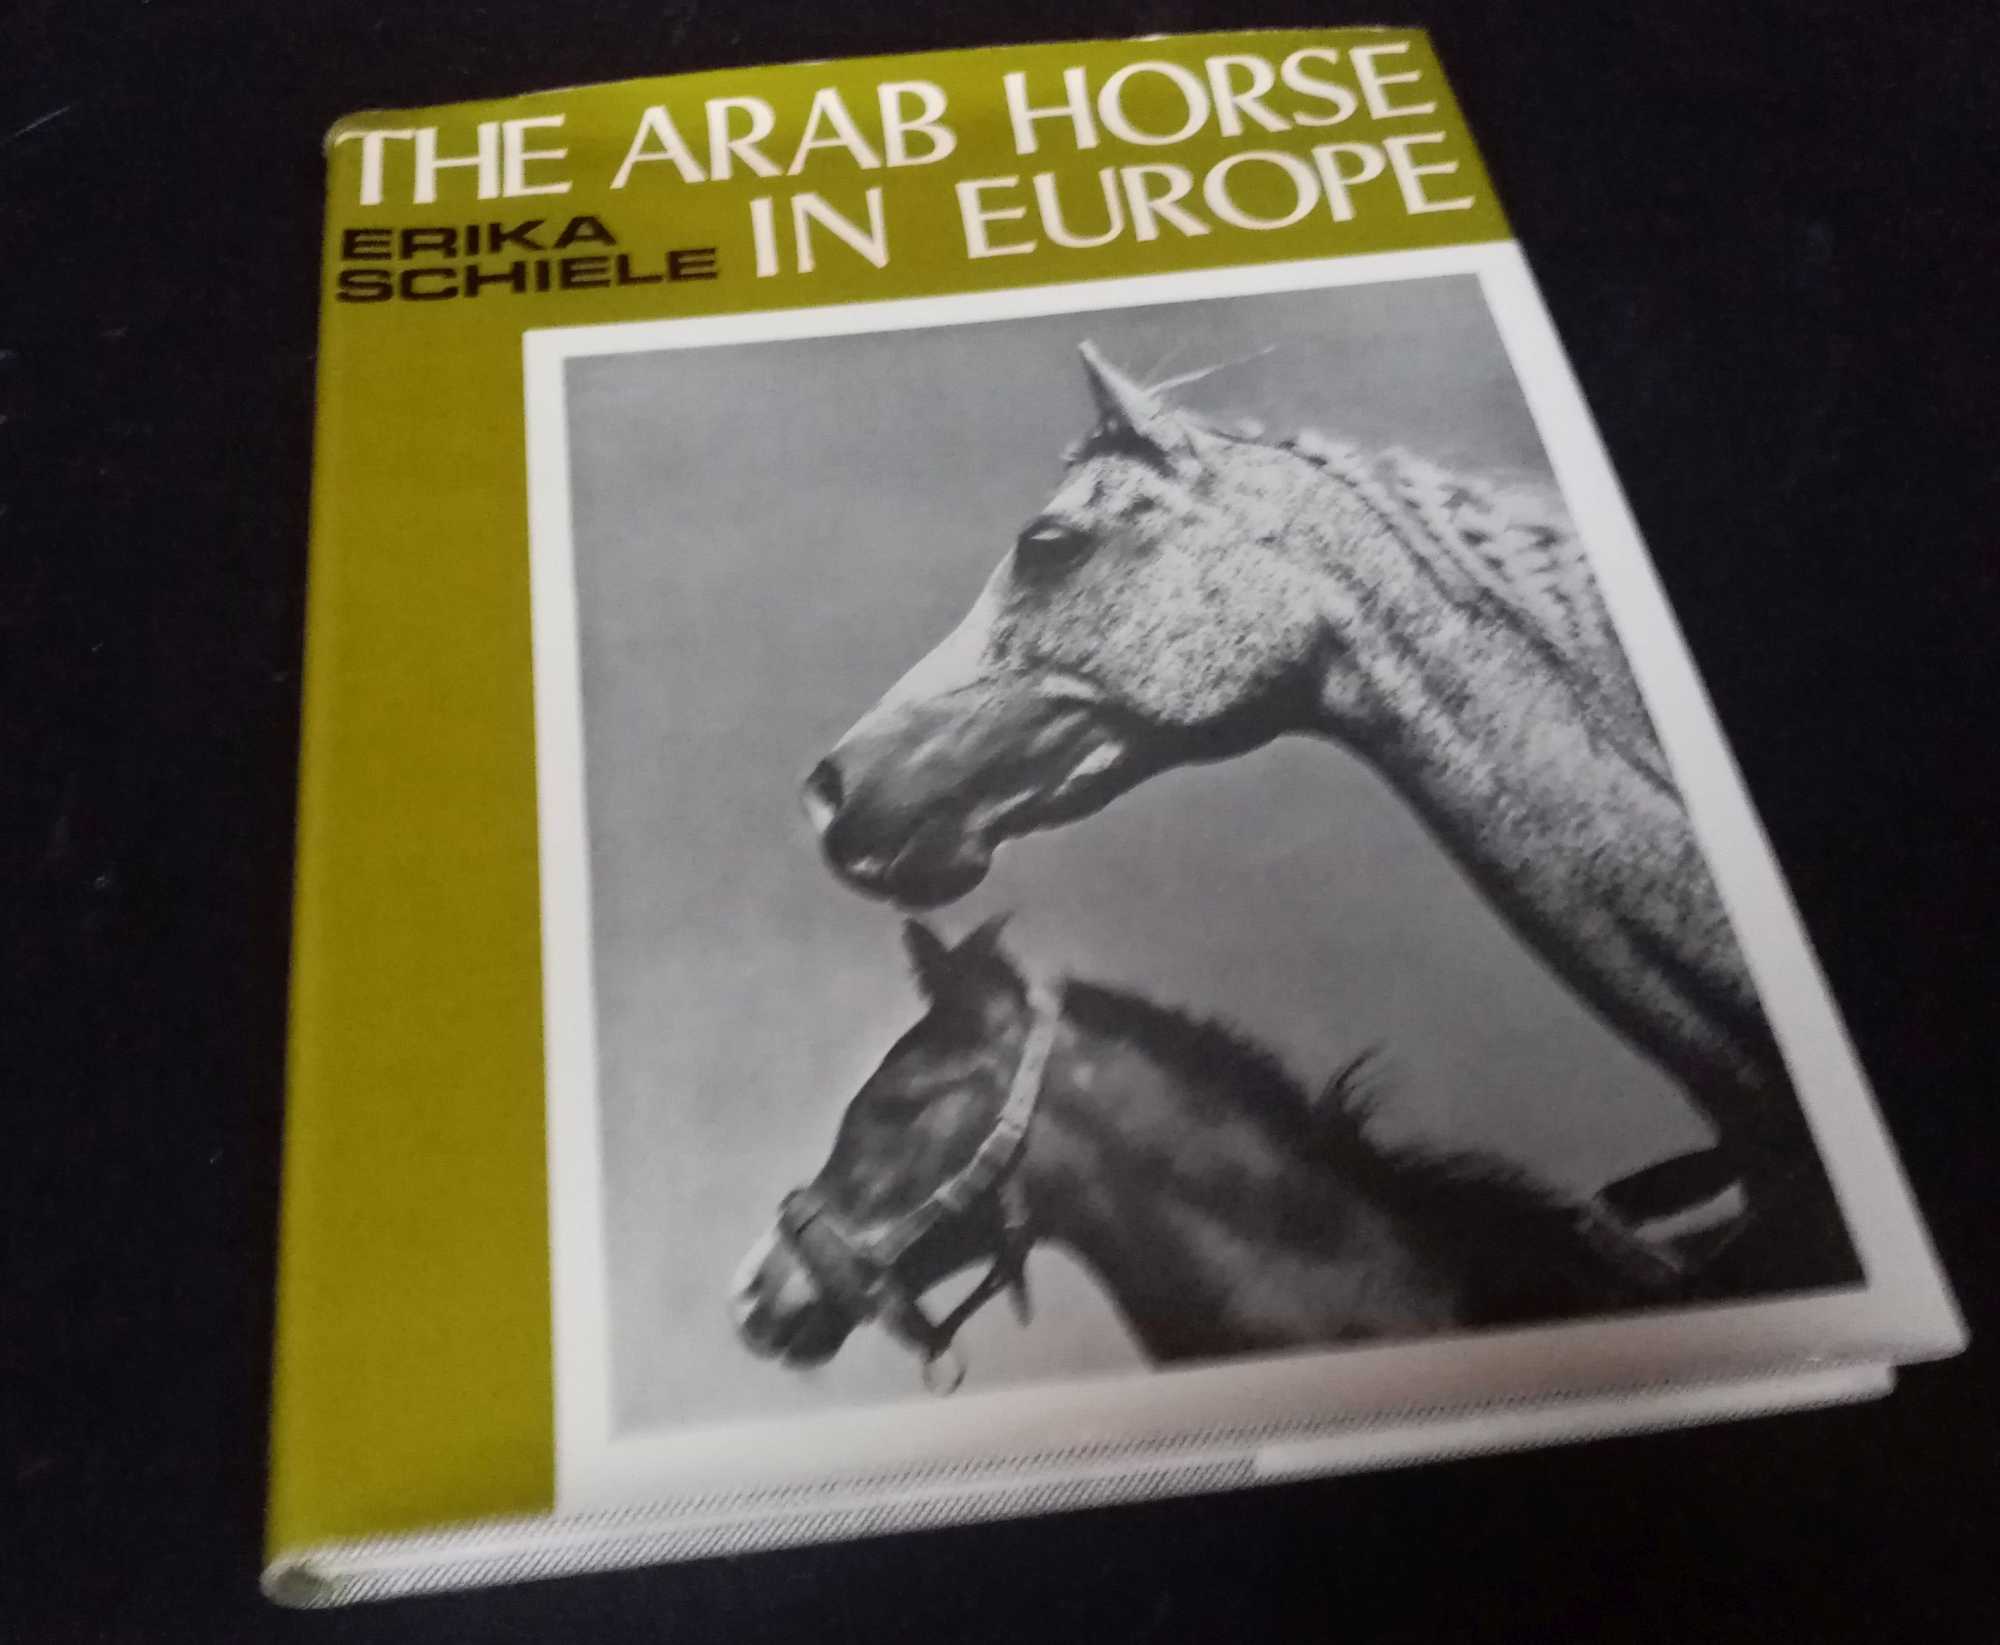 Erika Schiele - The Arab Horse in Europe